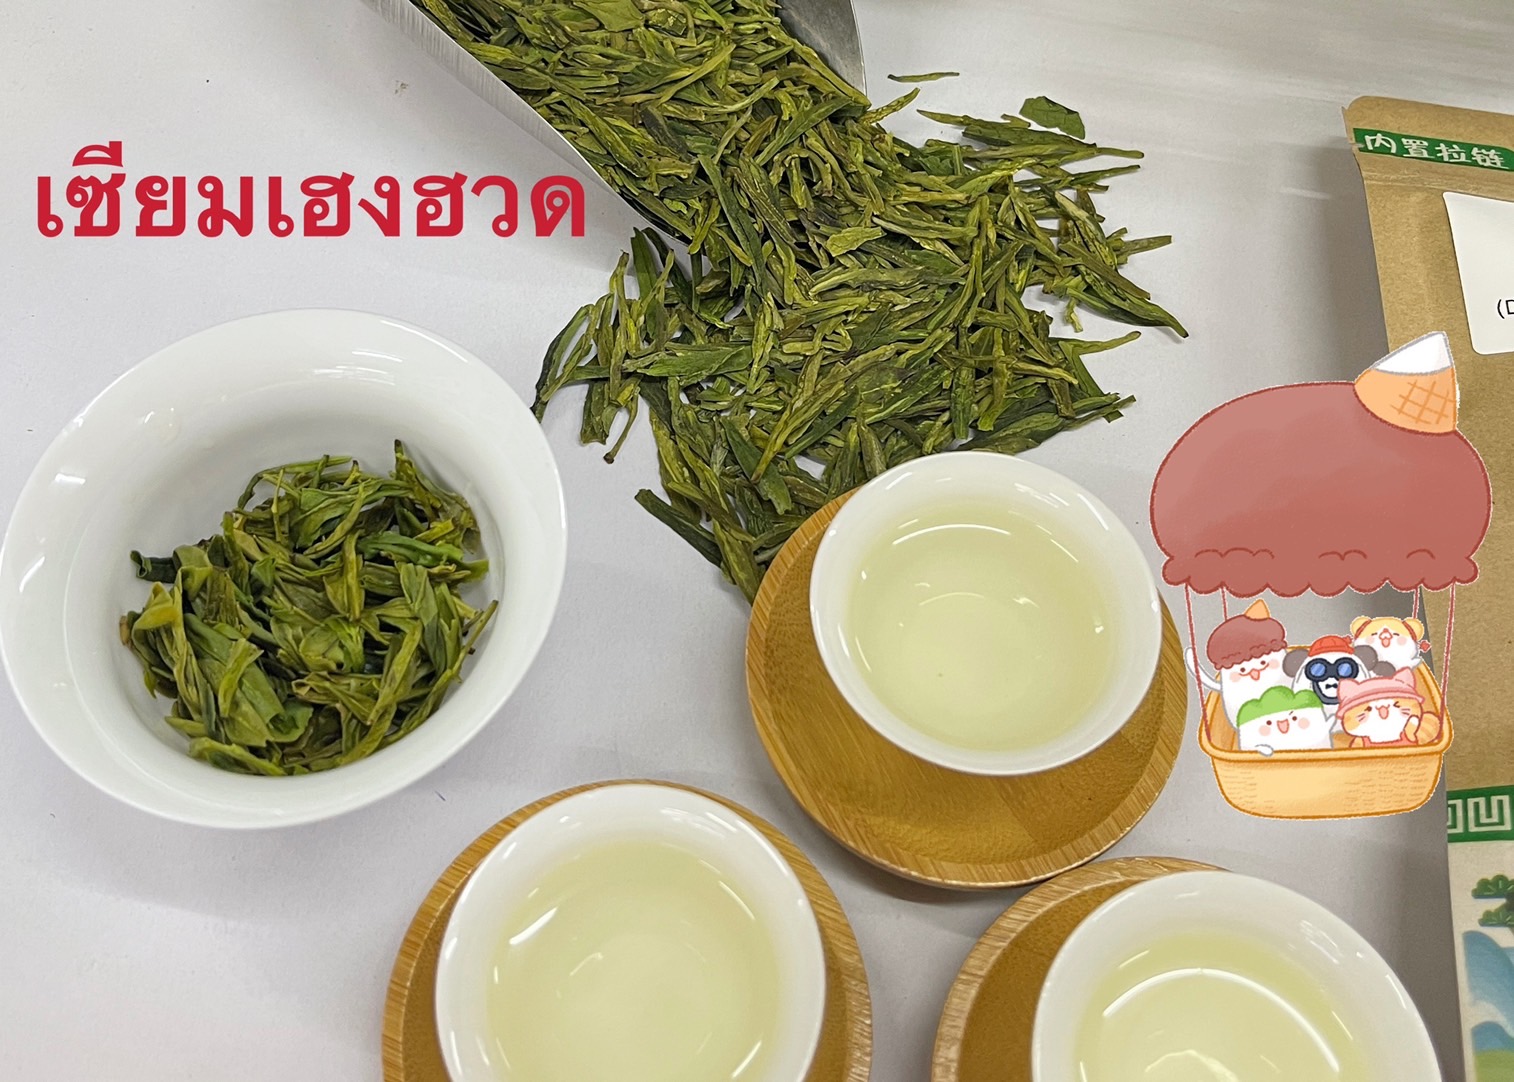 รายละเอียดเพิ่มเติมเกี่ยวกับ ชาเขียวหลงจิ่งหางโจว A 西湖龙井 A Green Tea Longjing(Dragon Well)from Hangzhou A